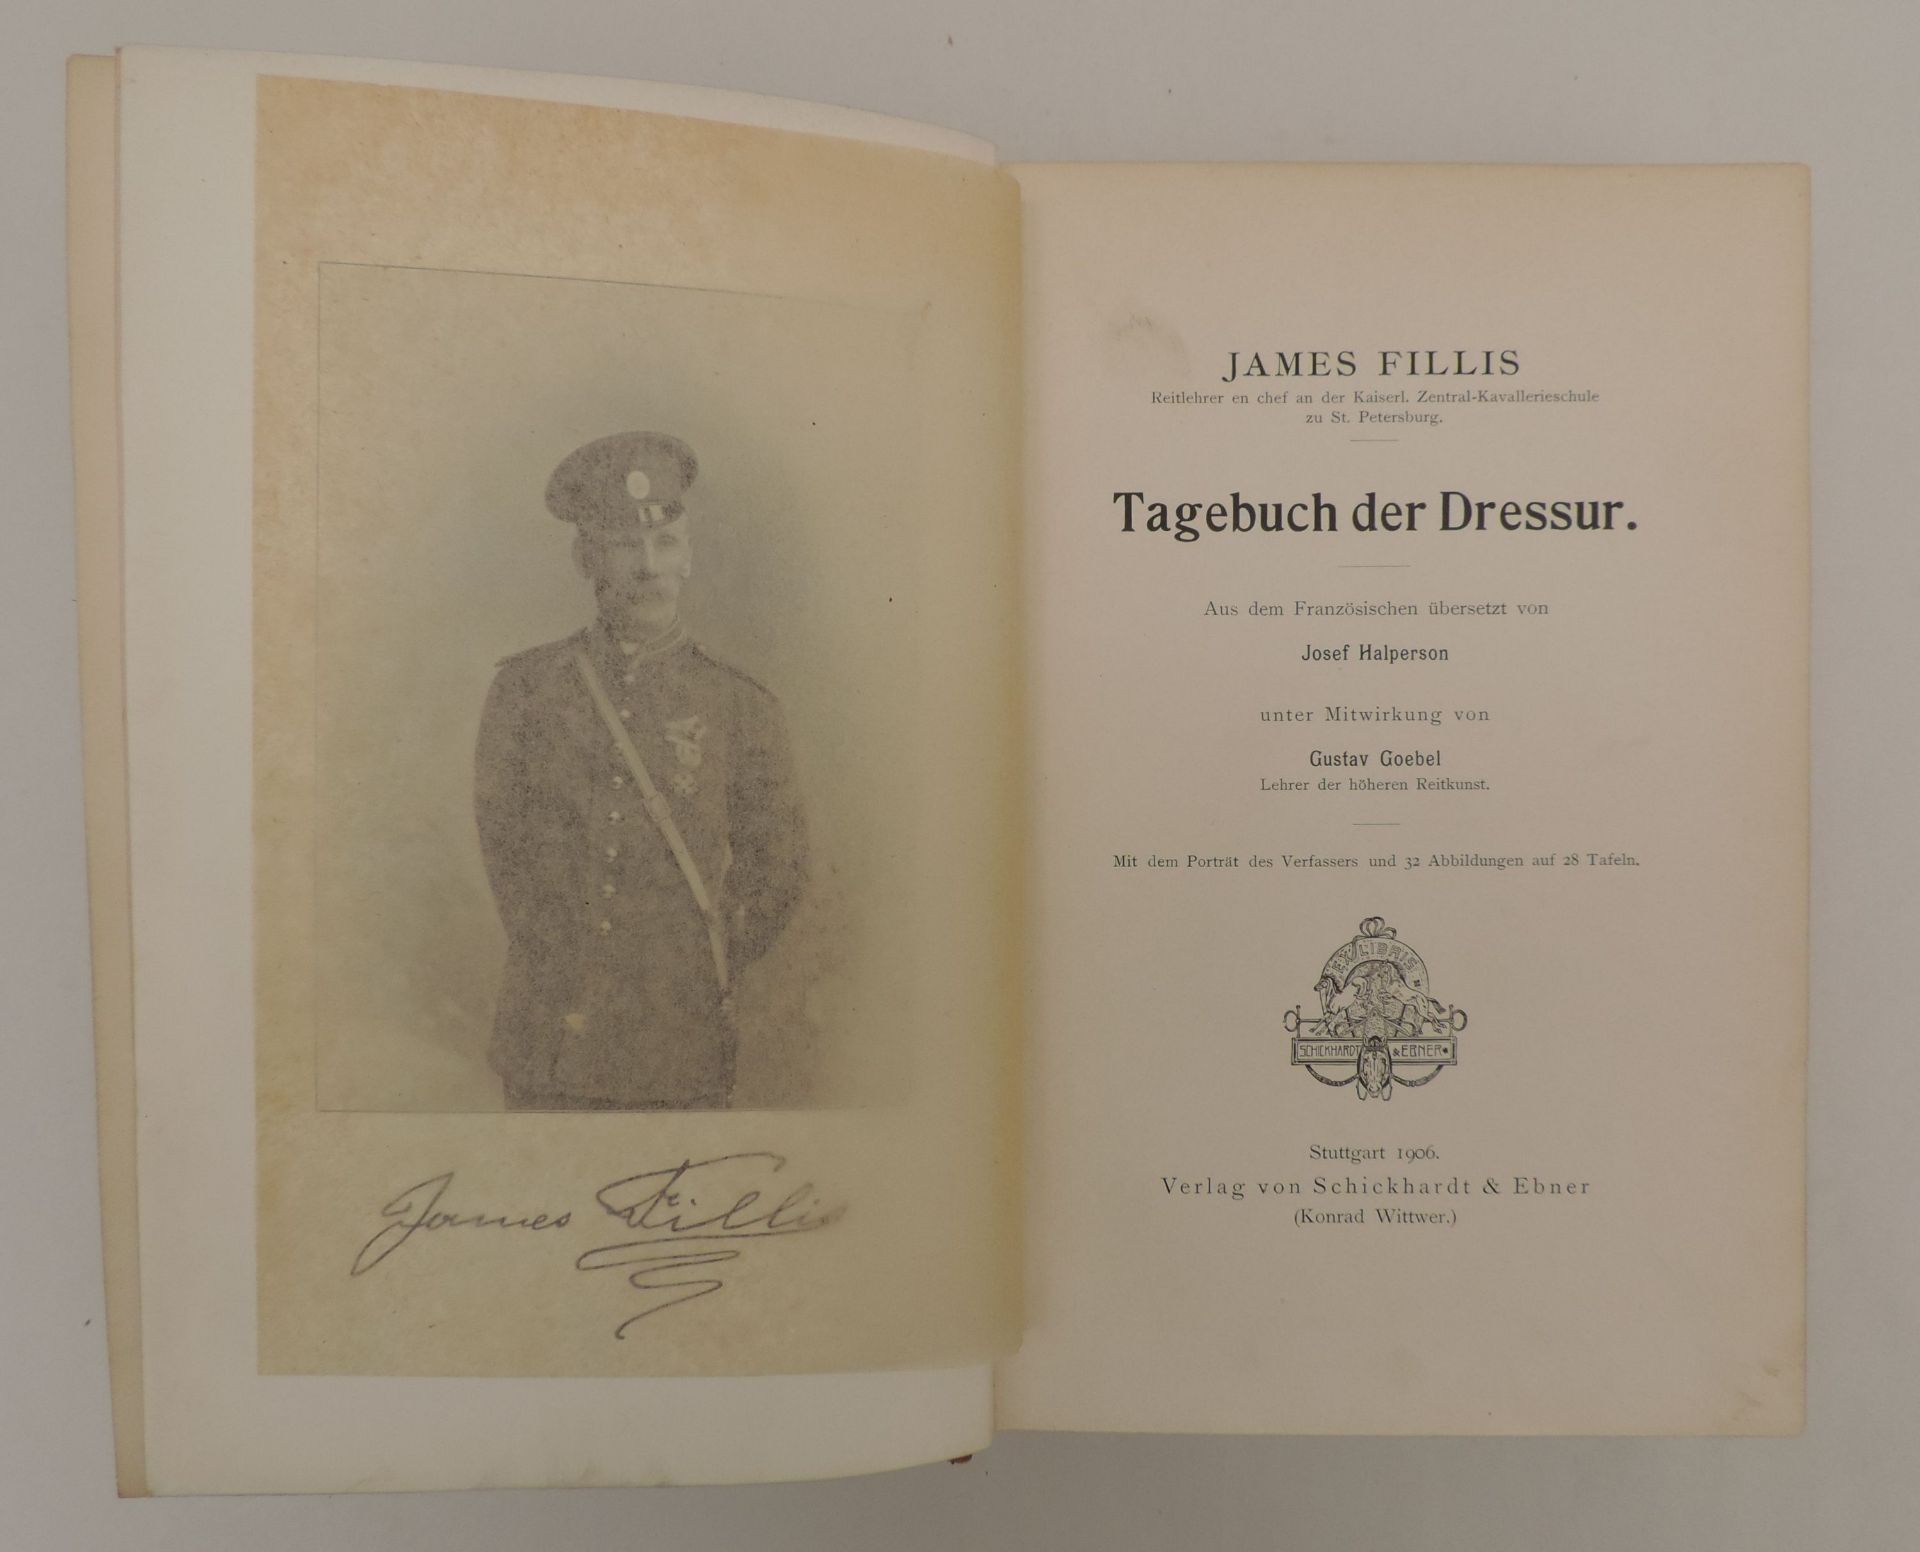 FILLIS, James, Tagebuch der Dressur. Aus dem Französischen übersetzt von Josef Halperson unter